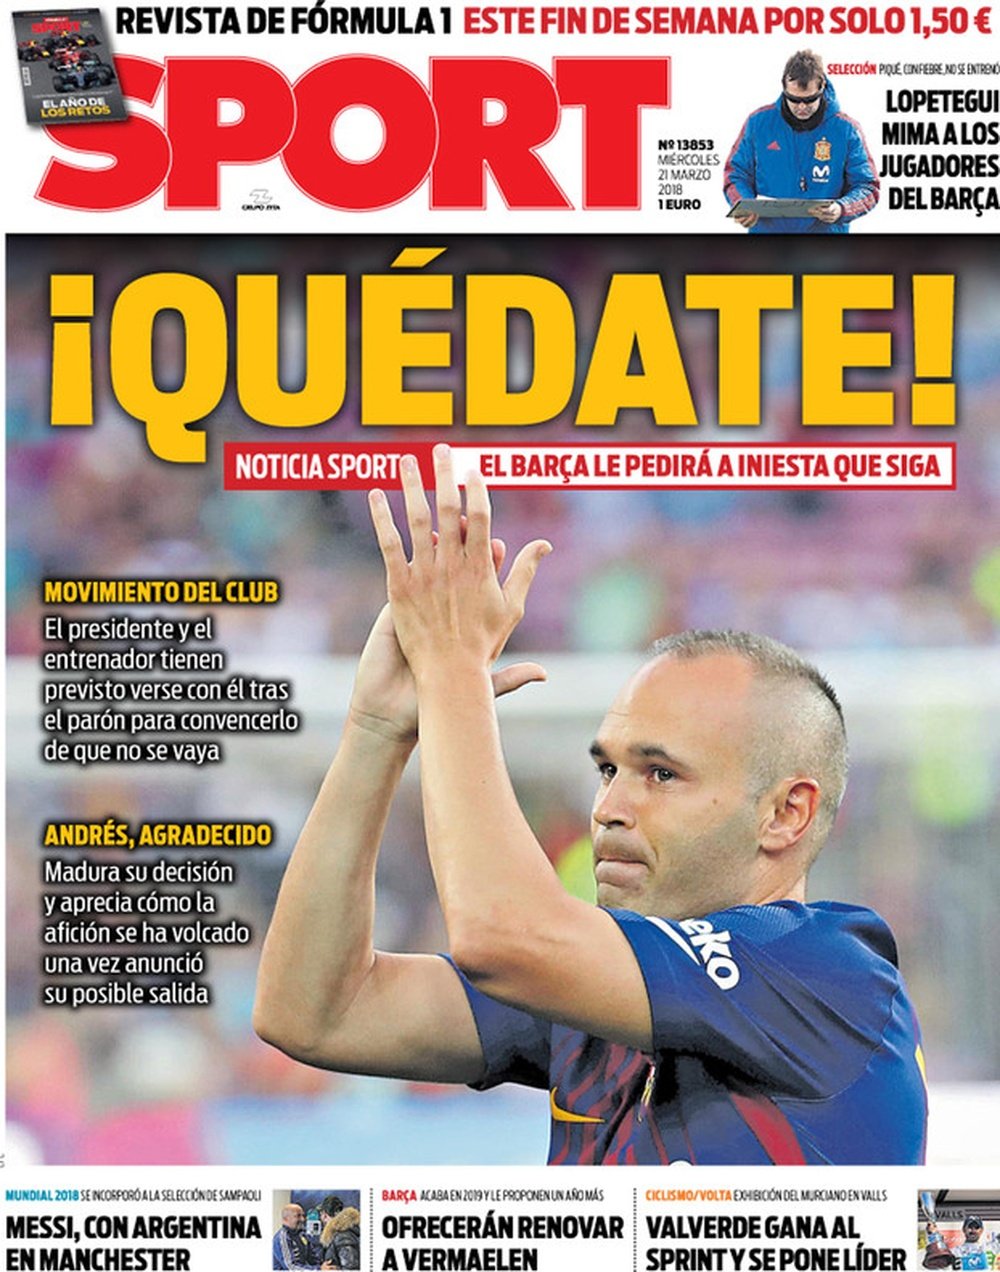 Capa do 'Sport' de 21-03-18. Sport